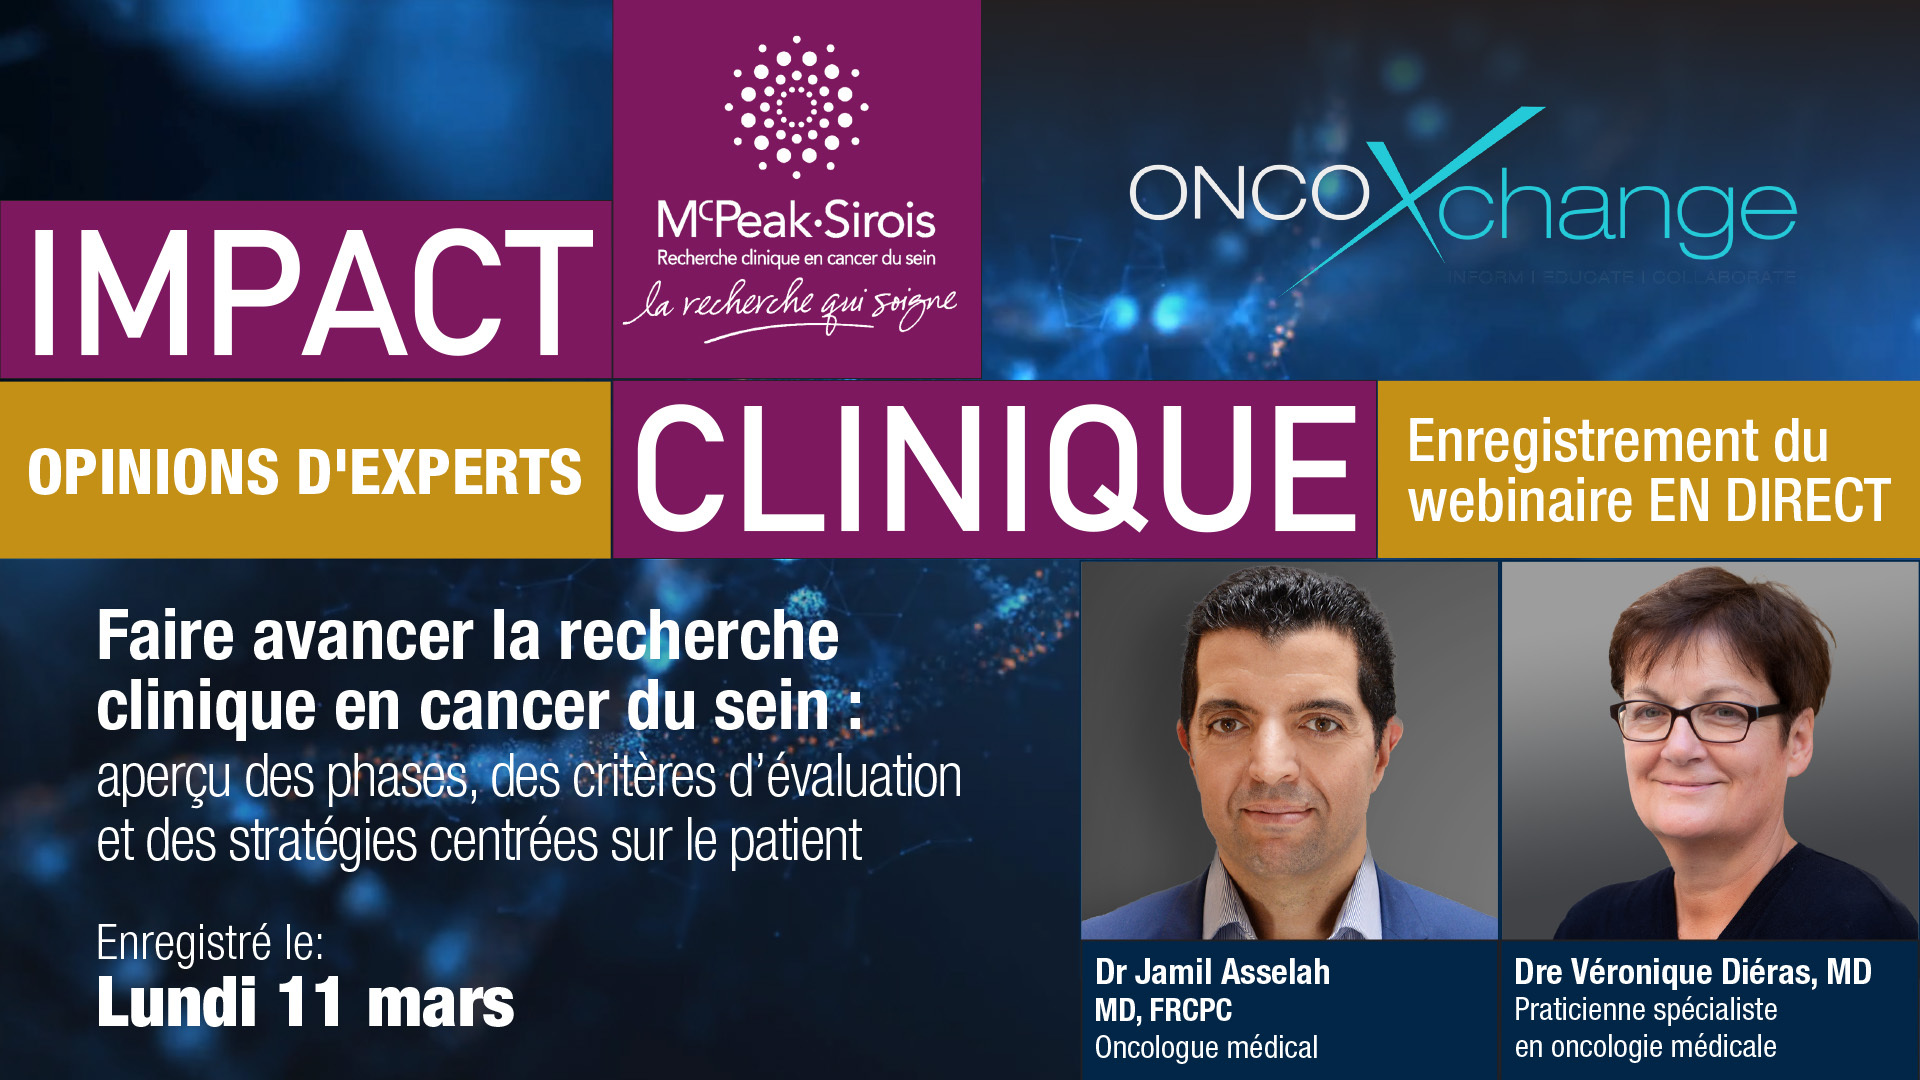 IMPACT CLINIQUE - Opinions d'experts: Faire avancer la recherche clinique en cancer du sein